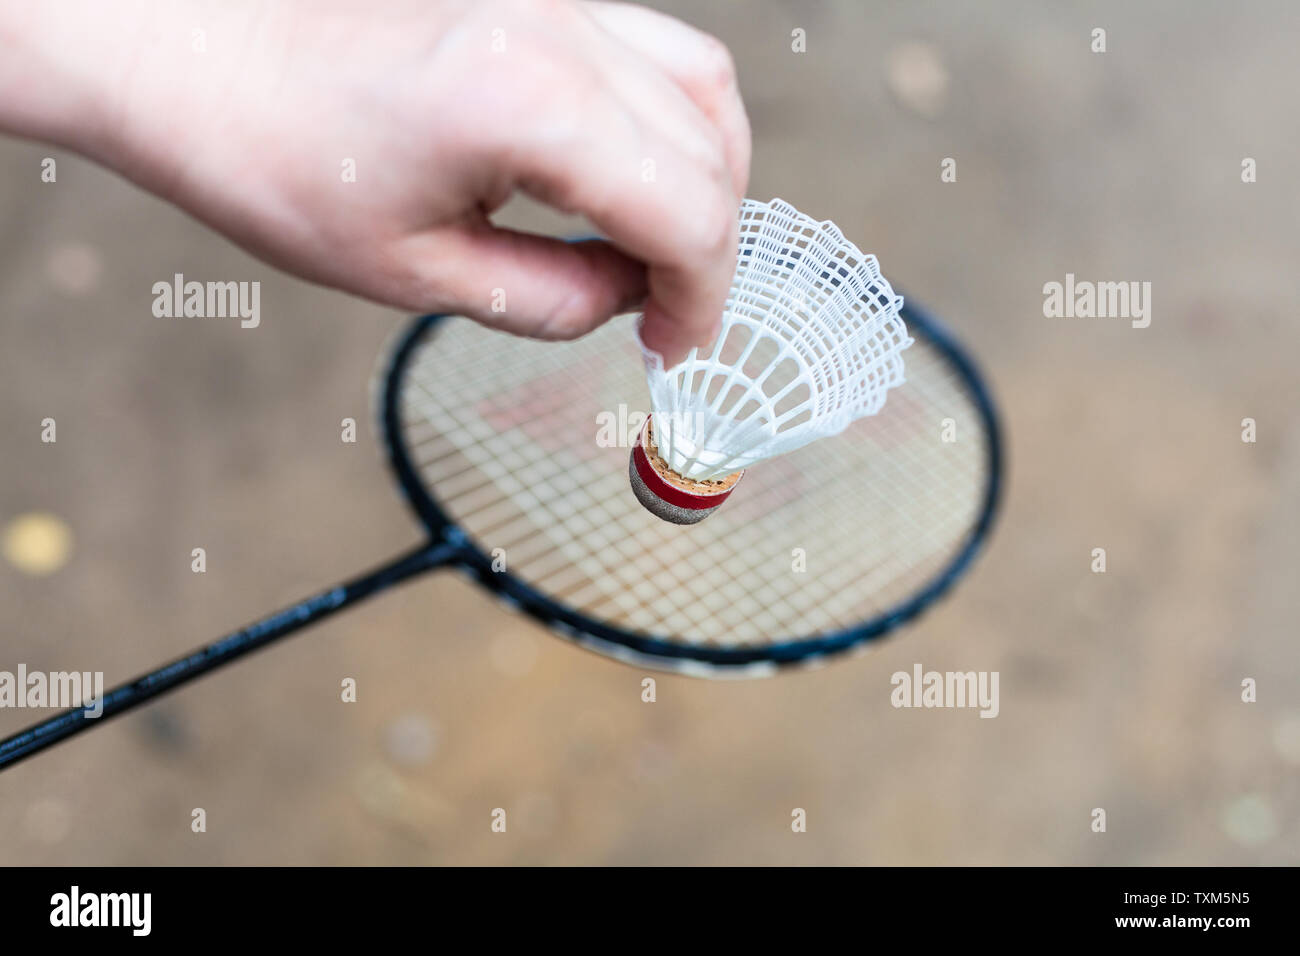 Hand hält Federball über Badminton Schläger im freien Erde Masse  Stockfotografie - Alamy